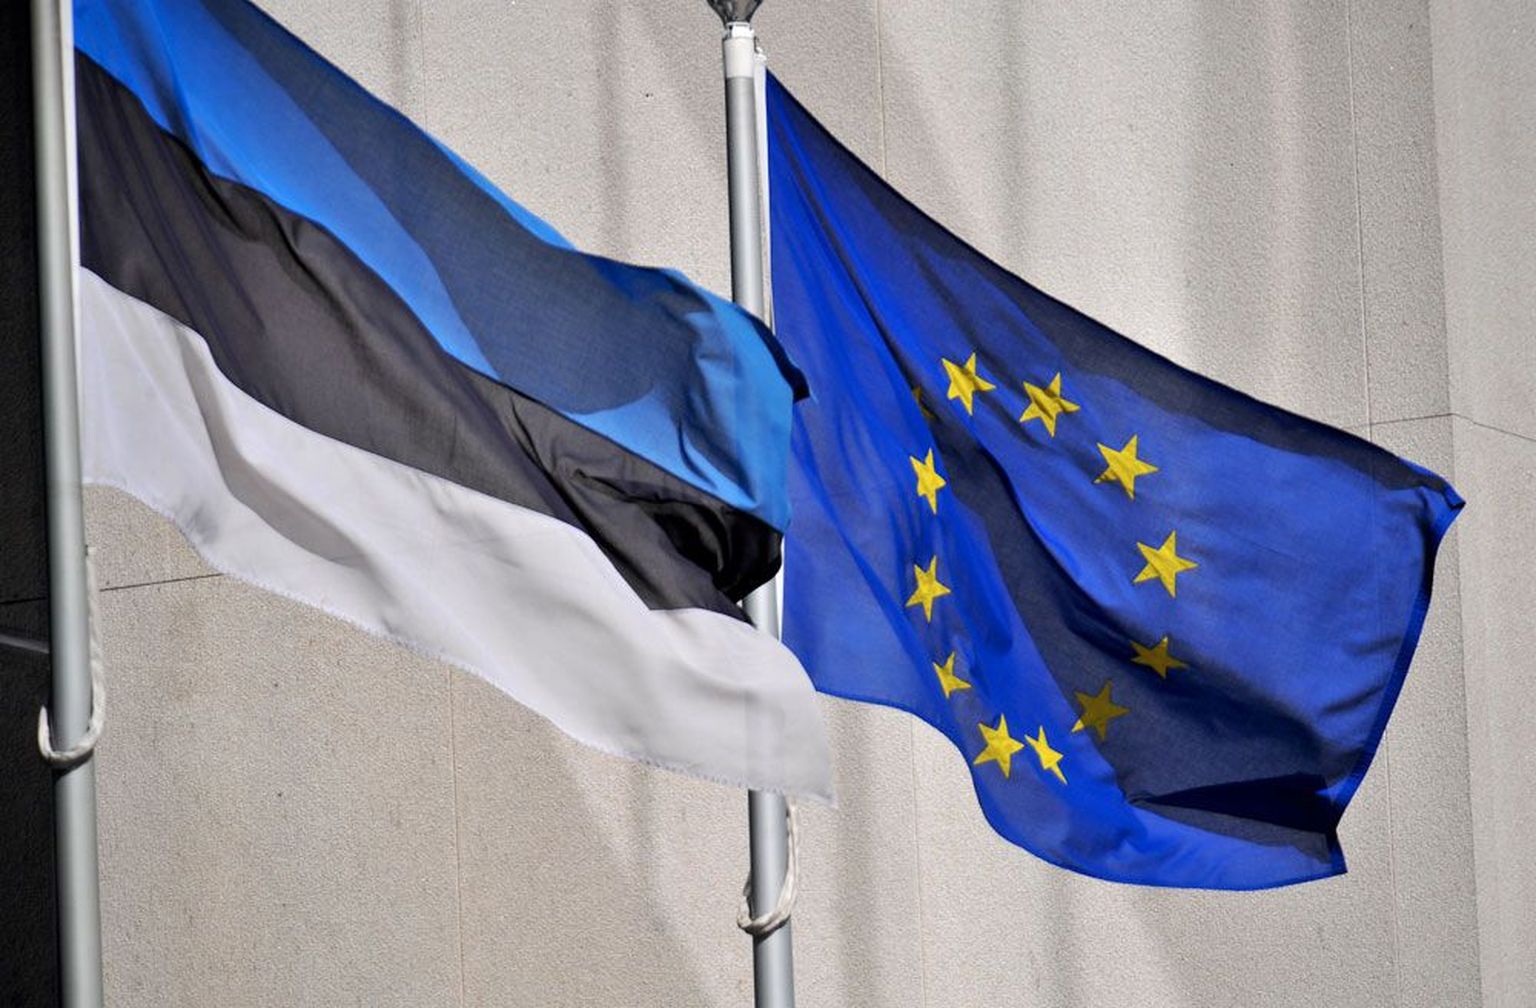 Флаг Эстонии и флаг Евросоюза. Иллюстративное фото.